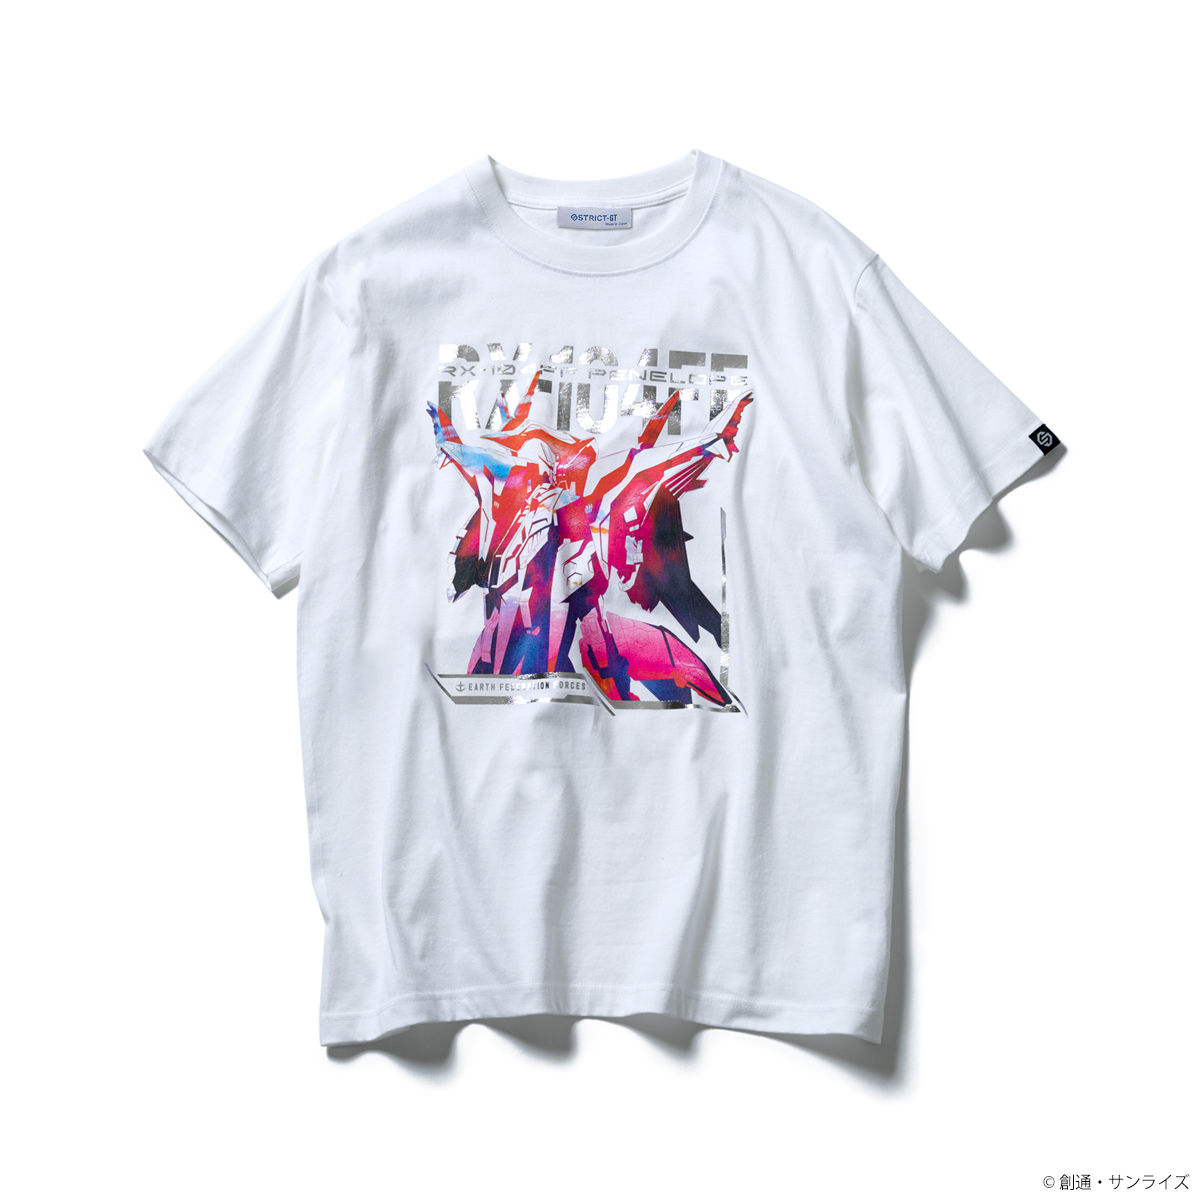 <優惠價>RX-104FF Penelope T-shirt—Mobile Suit Gundam Hathaway/STRICT-G Collaboration